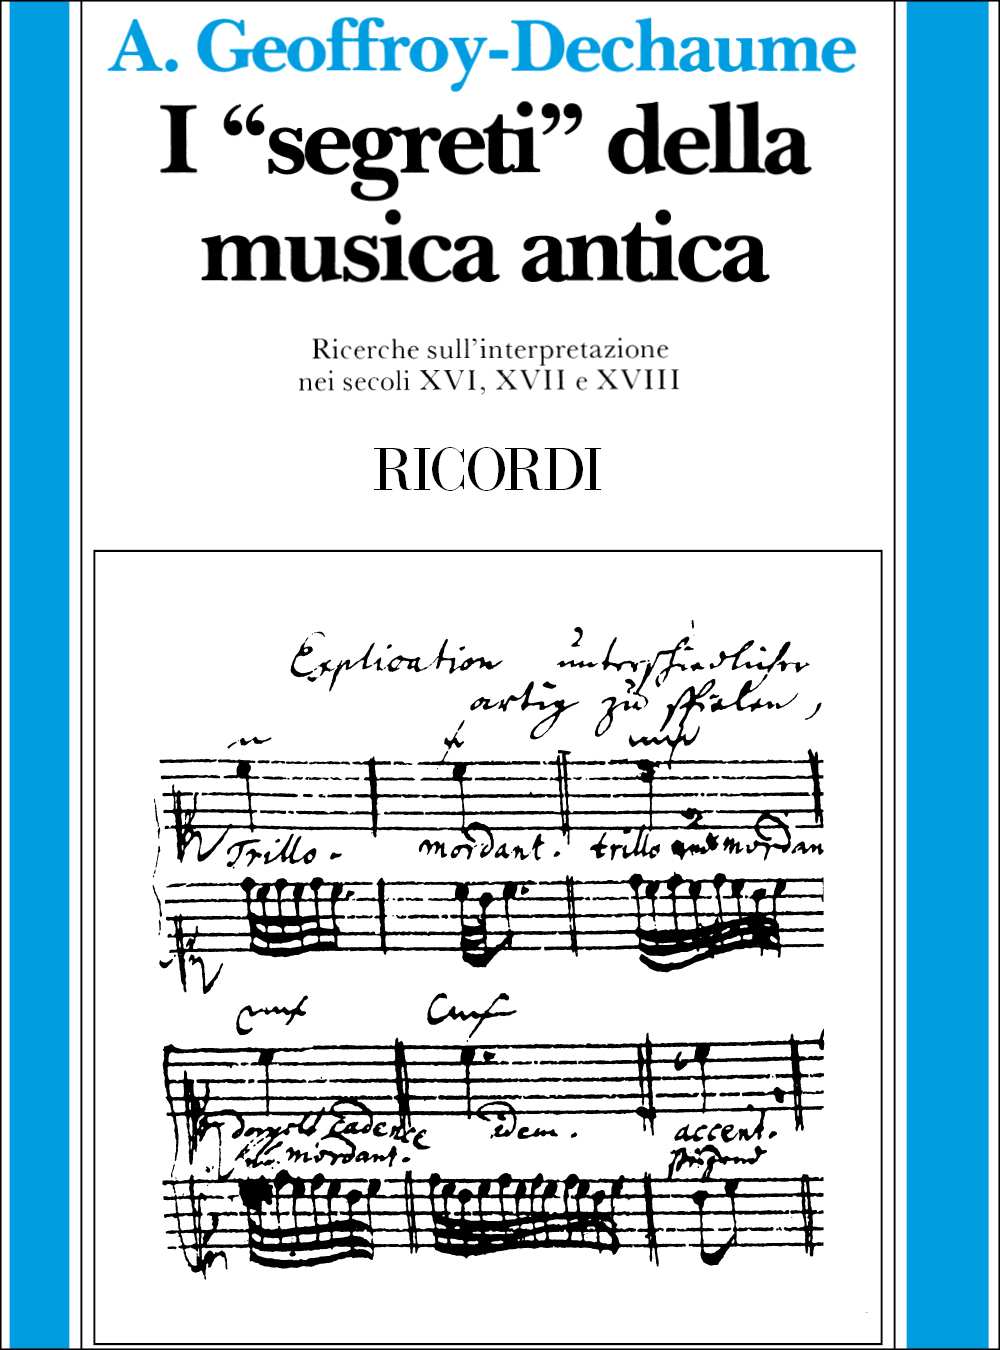 A. Dechaume: I Segreti Della Musica Antica